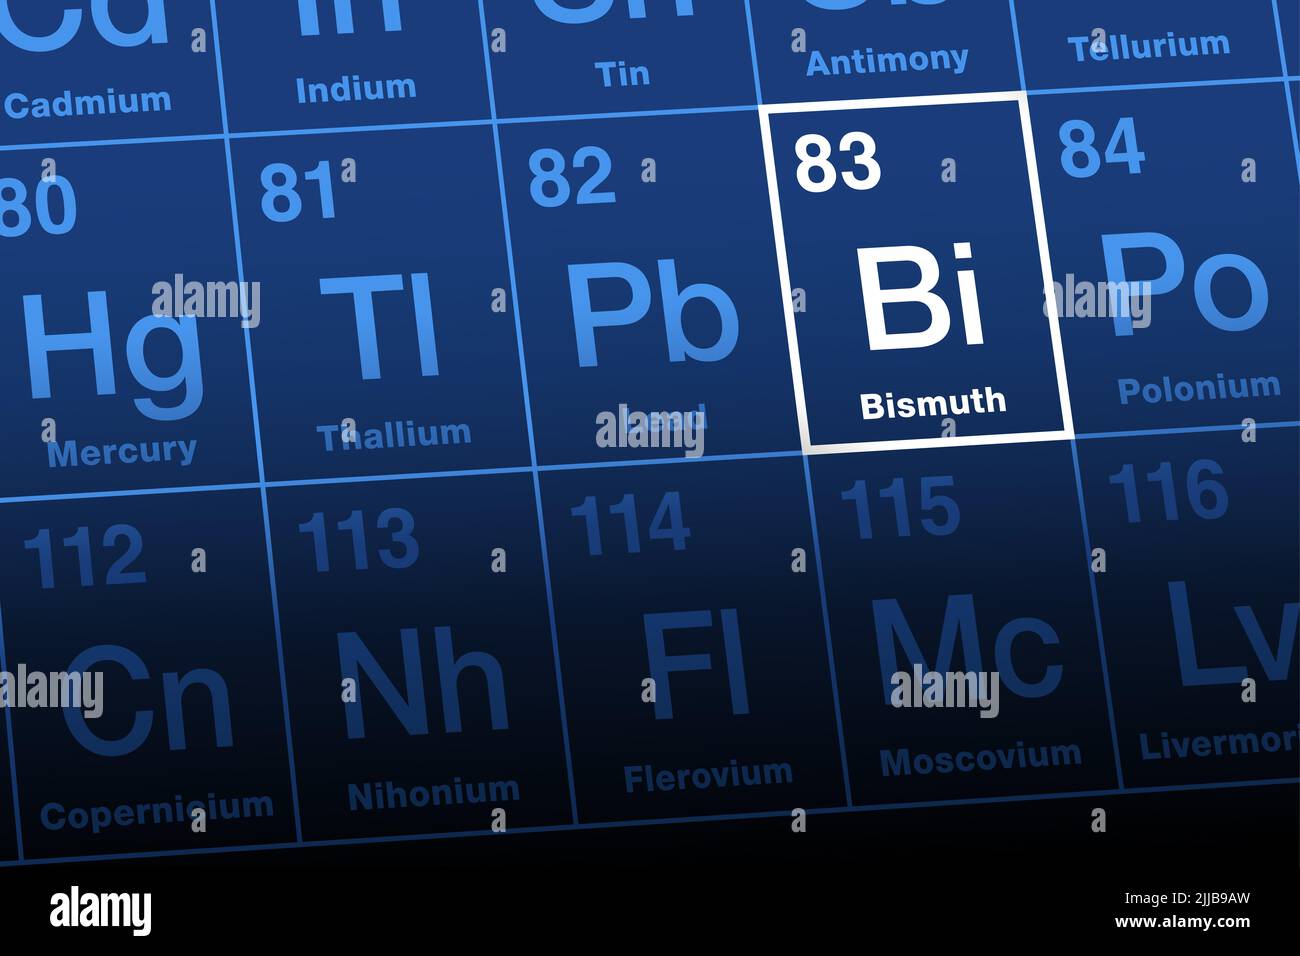 Bismuto su tavola periodica. Metallo radioattivo post-transizione ed elemento chimico con il simbolo Bi, eventualmente dell'obsoleto Wismut tedesco. Foto Stock